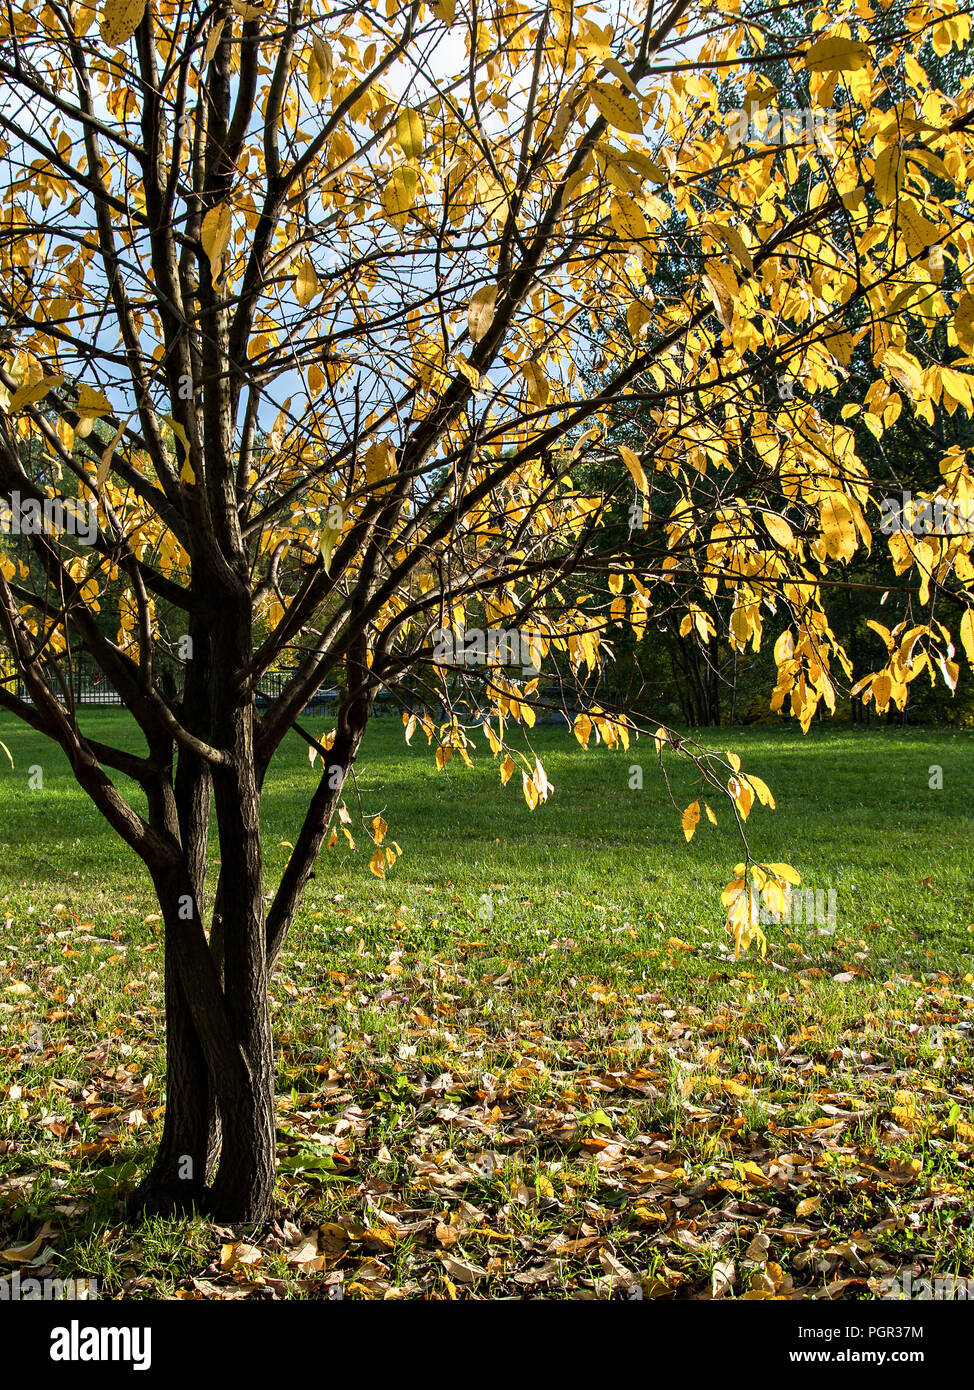 Los árboles con hojas amarillas caen durante la caída de las hojas de un  verde claro rodeado por hojas caídas brillantemente iluminada por el sol de  otoño en octubre y Septiembre Fotografía